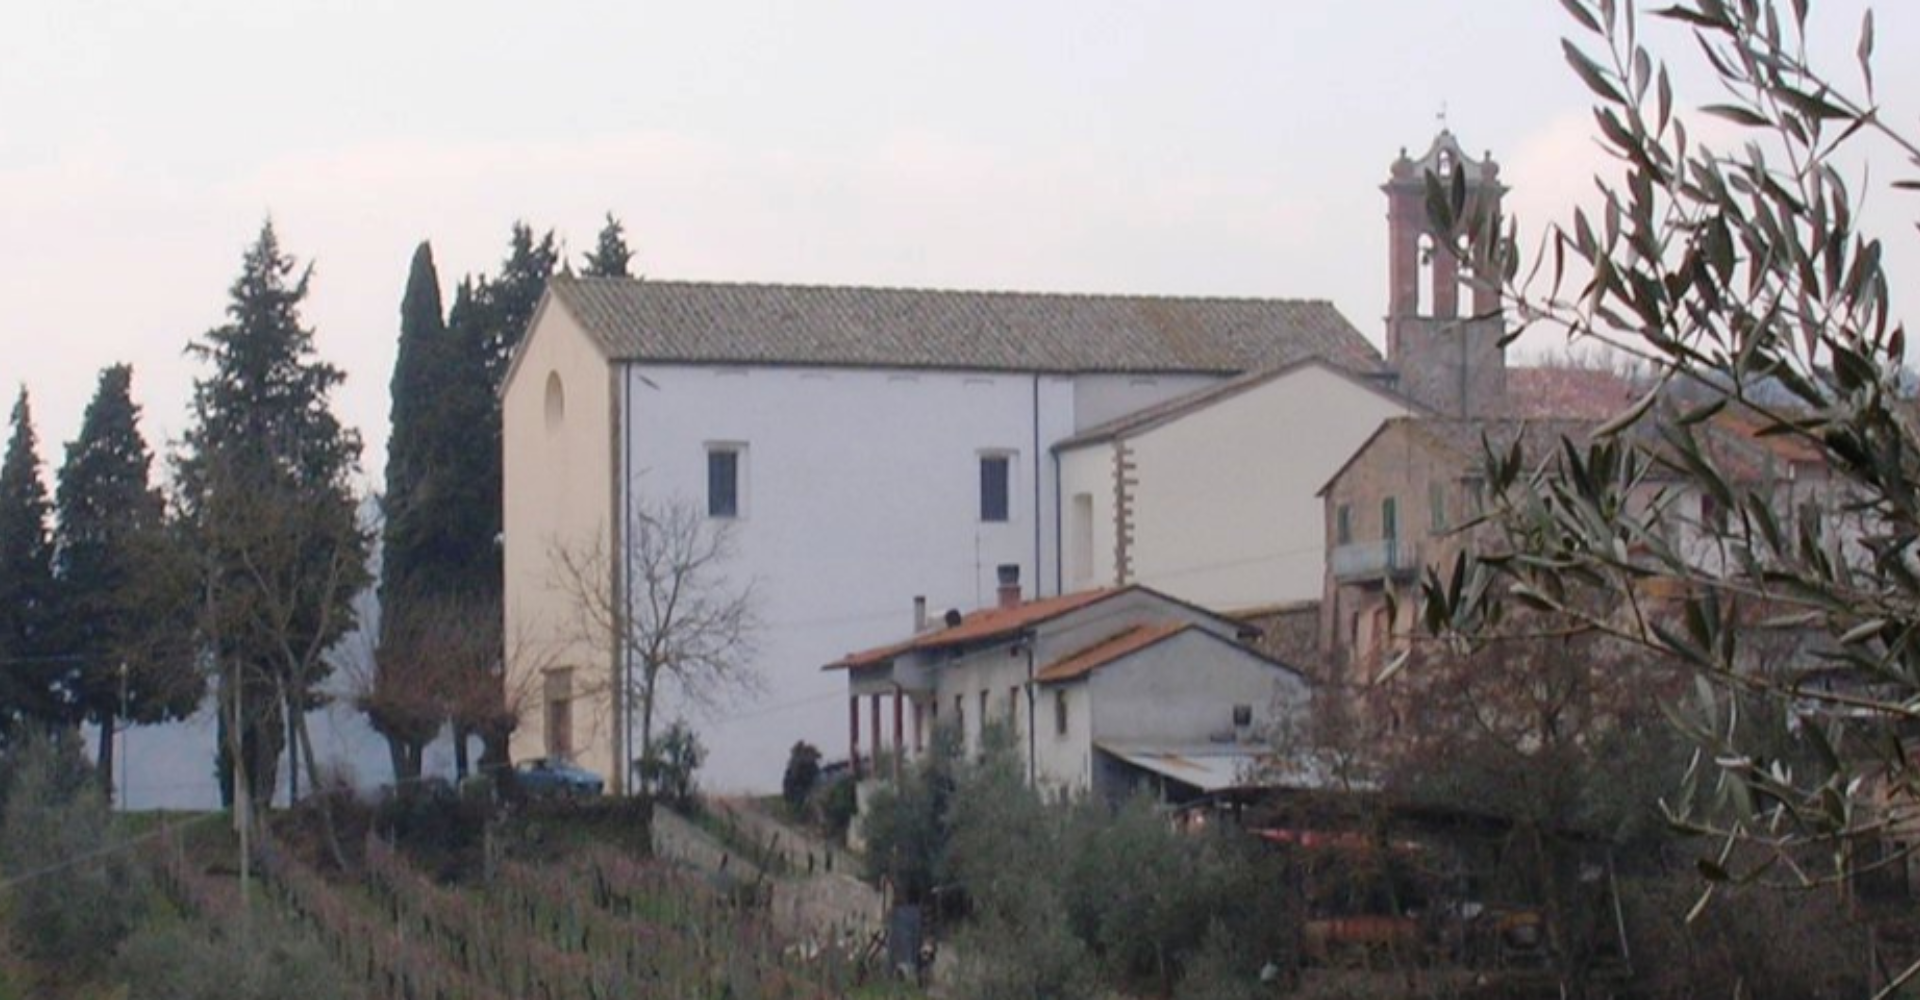 Sanctuary of the Madonna del Carmine